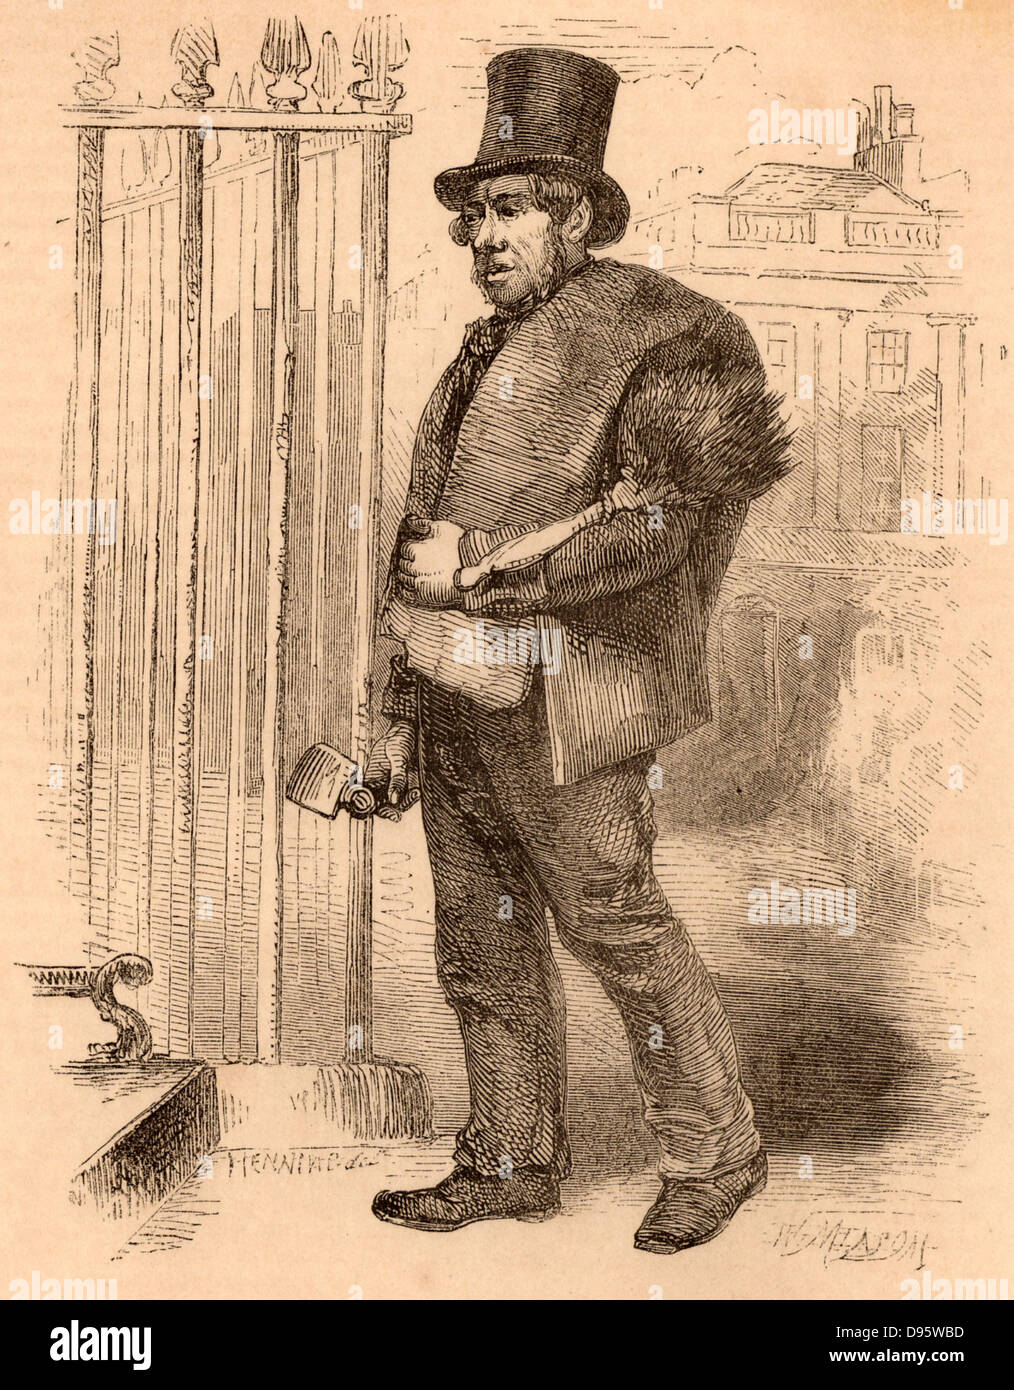 Einer der letzten klettern Schornsteinfeger mit einer Hacke für kratzen die Innenseite der Schornsteine, einer Bürste lose Ruß zu fegen, und Säcke für einsacken, russ. Fegt nicht nur schlecht von Wunden gelitten, sie waren auch anfällig für Krebs der Hodensack. Gravur von "London Labour und der Londoner Armen" von Henry Mayhew (London, 1861). Stockfoto